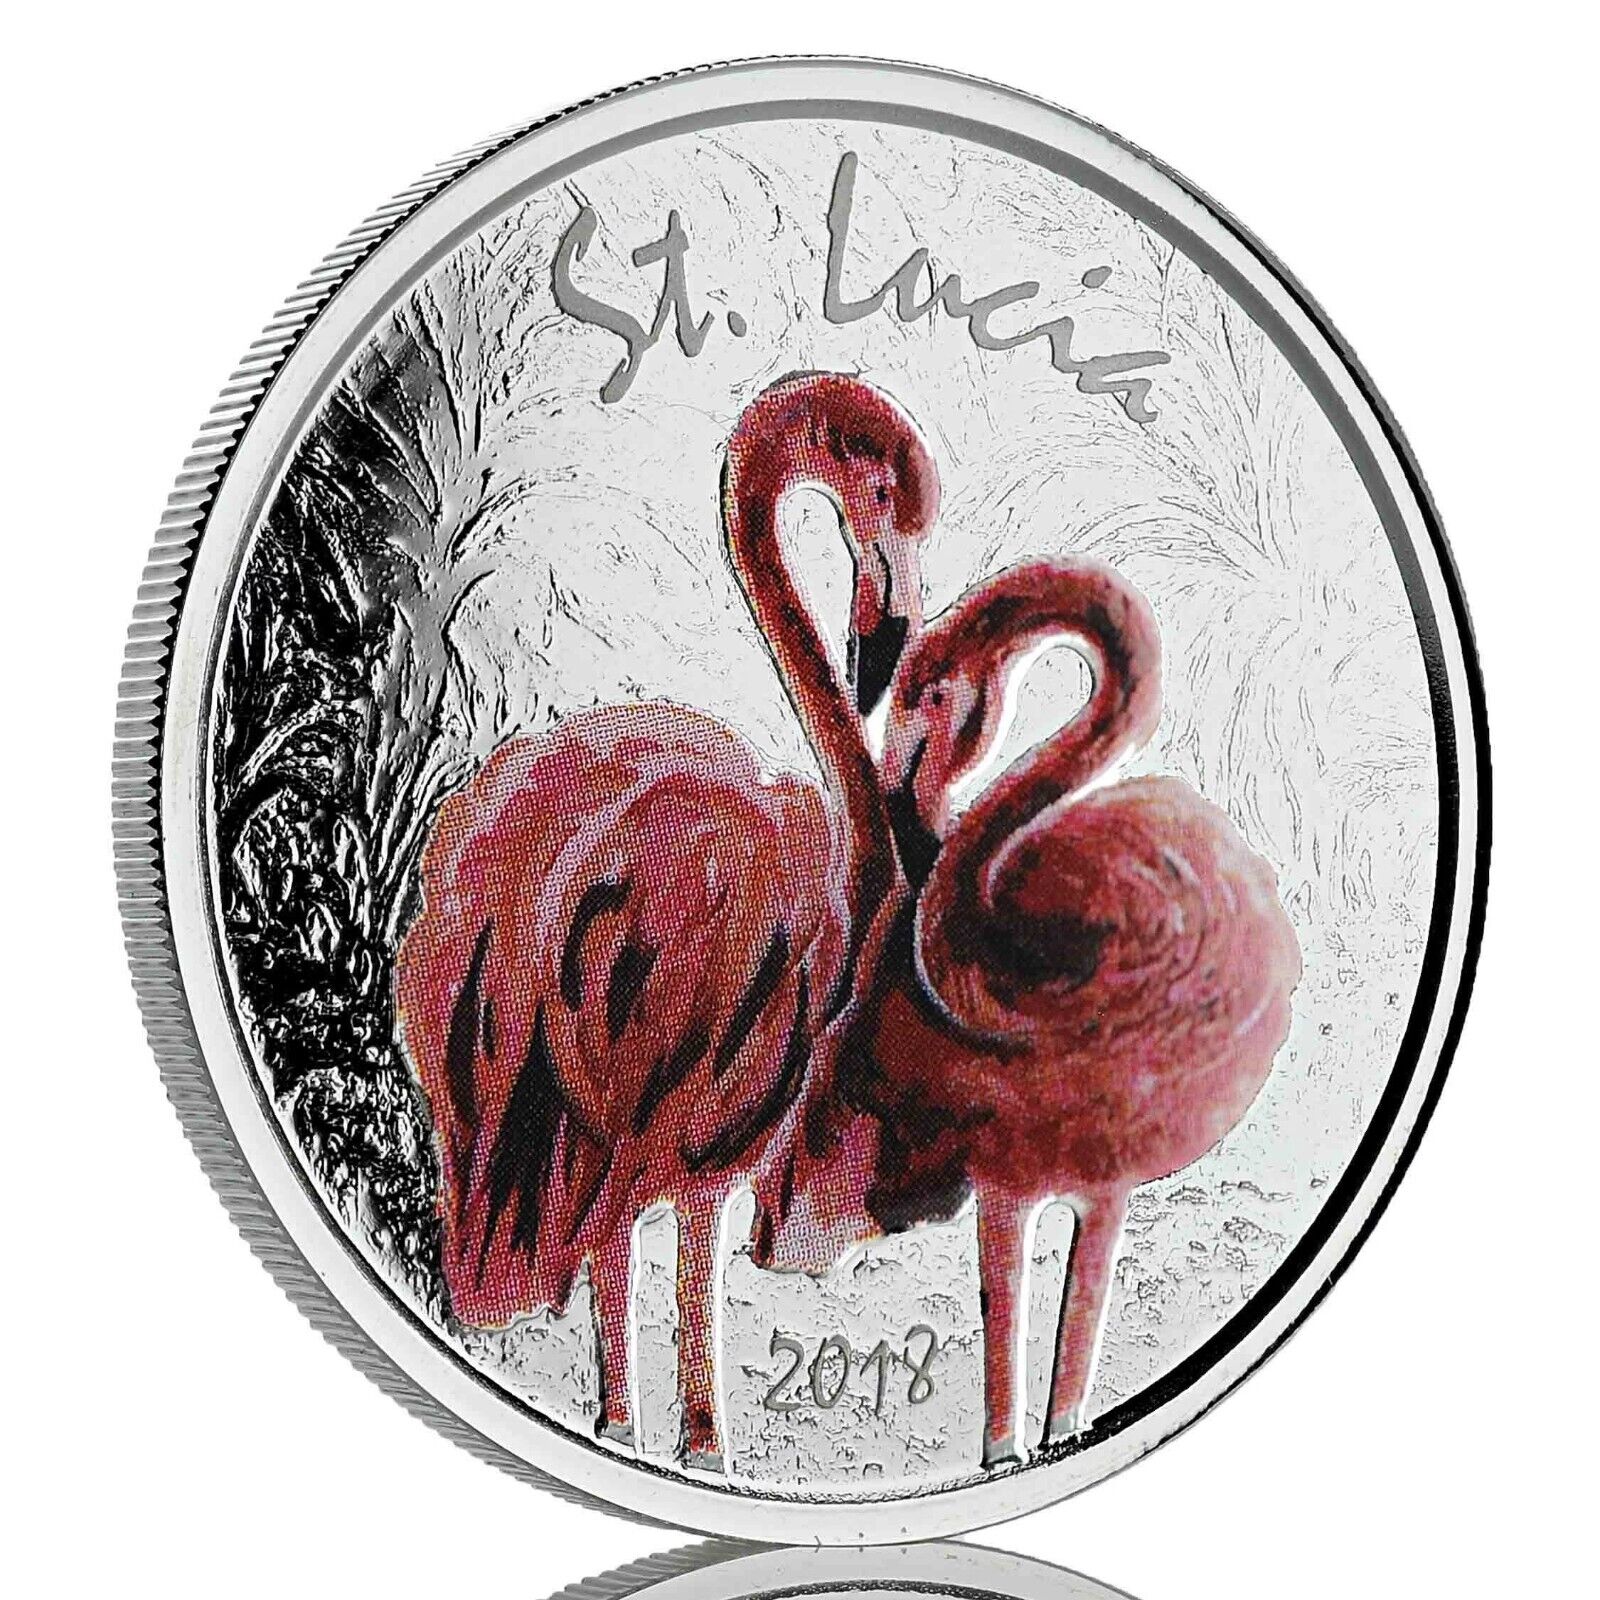 1 Oz Silver Coin 2018 EC8 Saint Lucia $2 Scottsdale Mint Color Proof - Flamingo-classypw.com-1